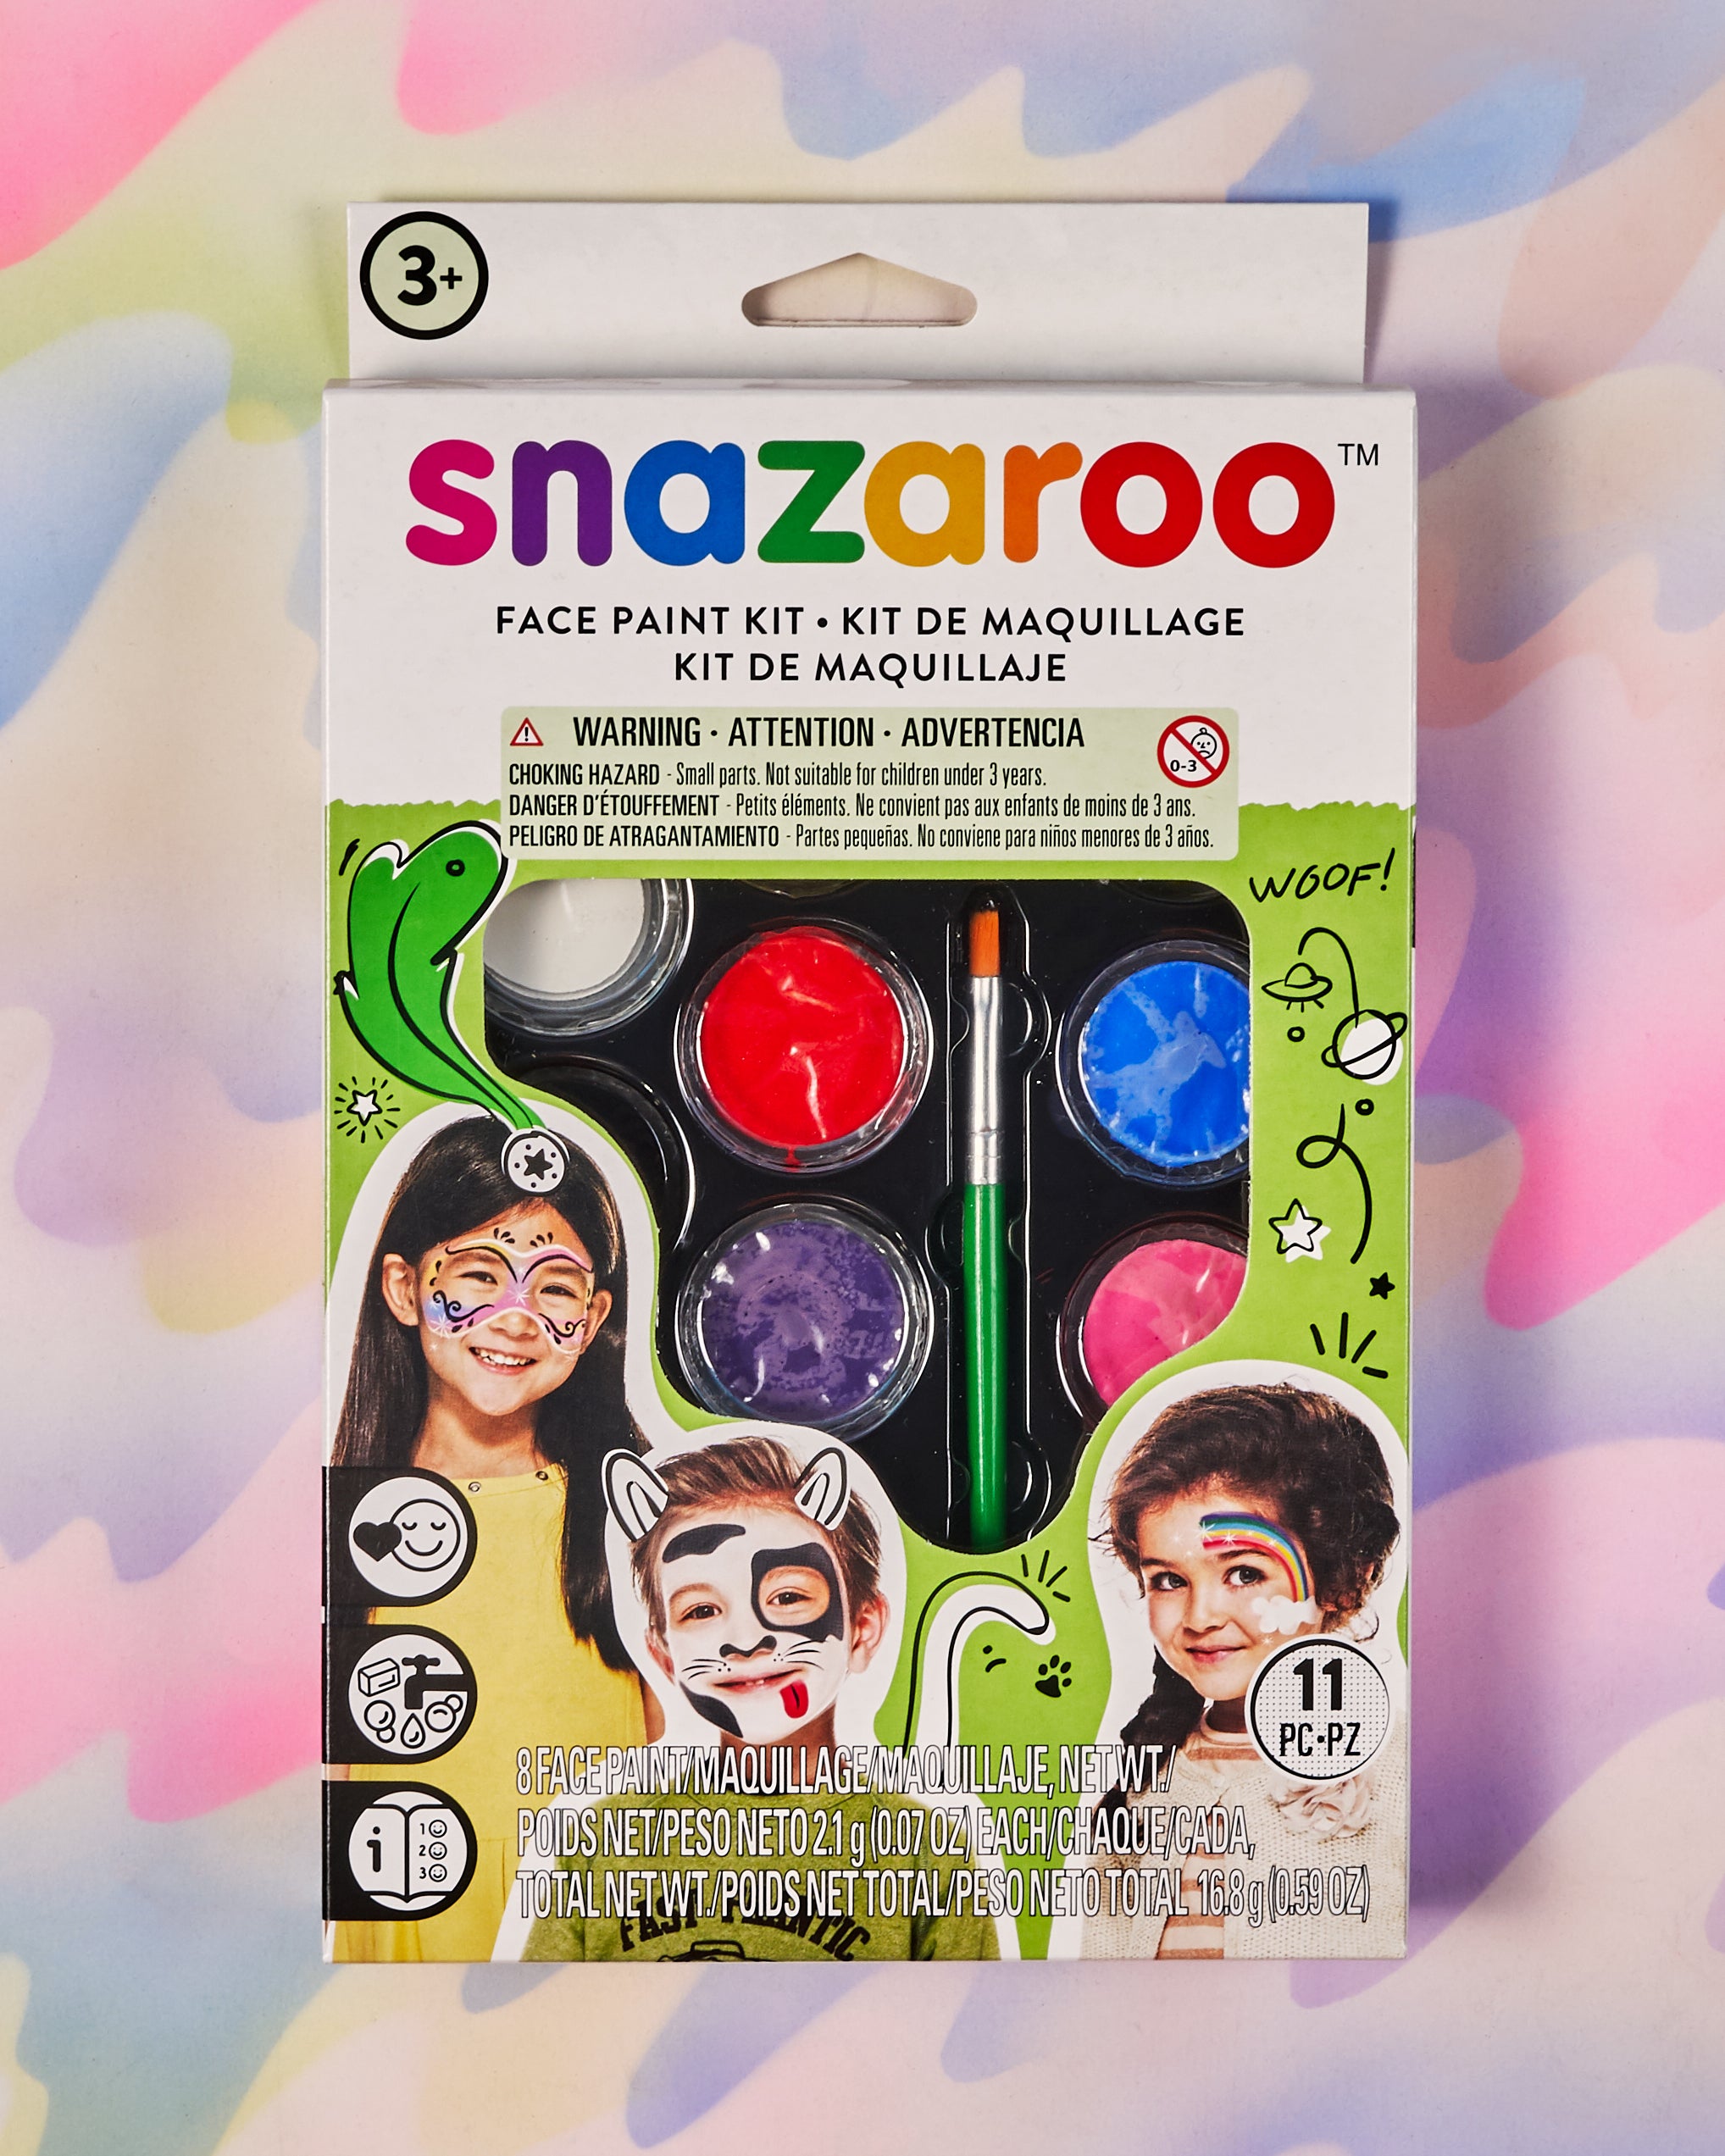 Snazaroo Face Painting Sticks Set of 6 - Basic